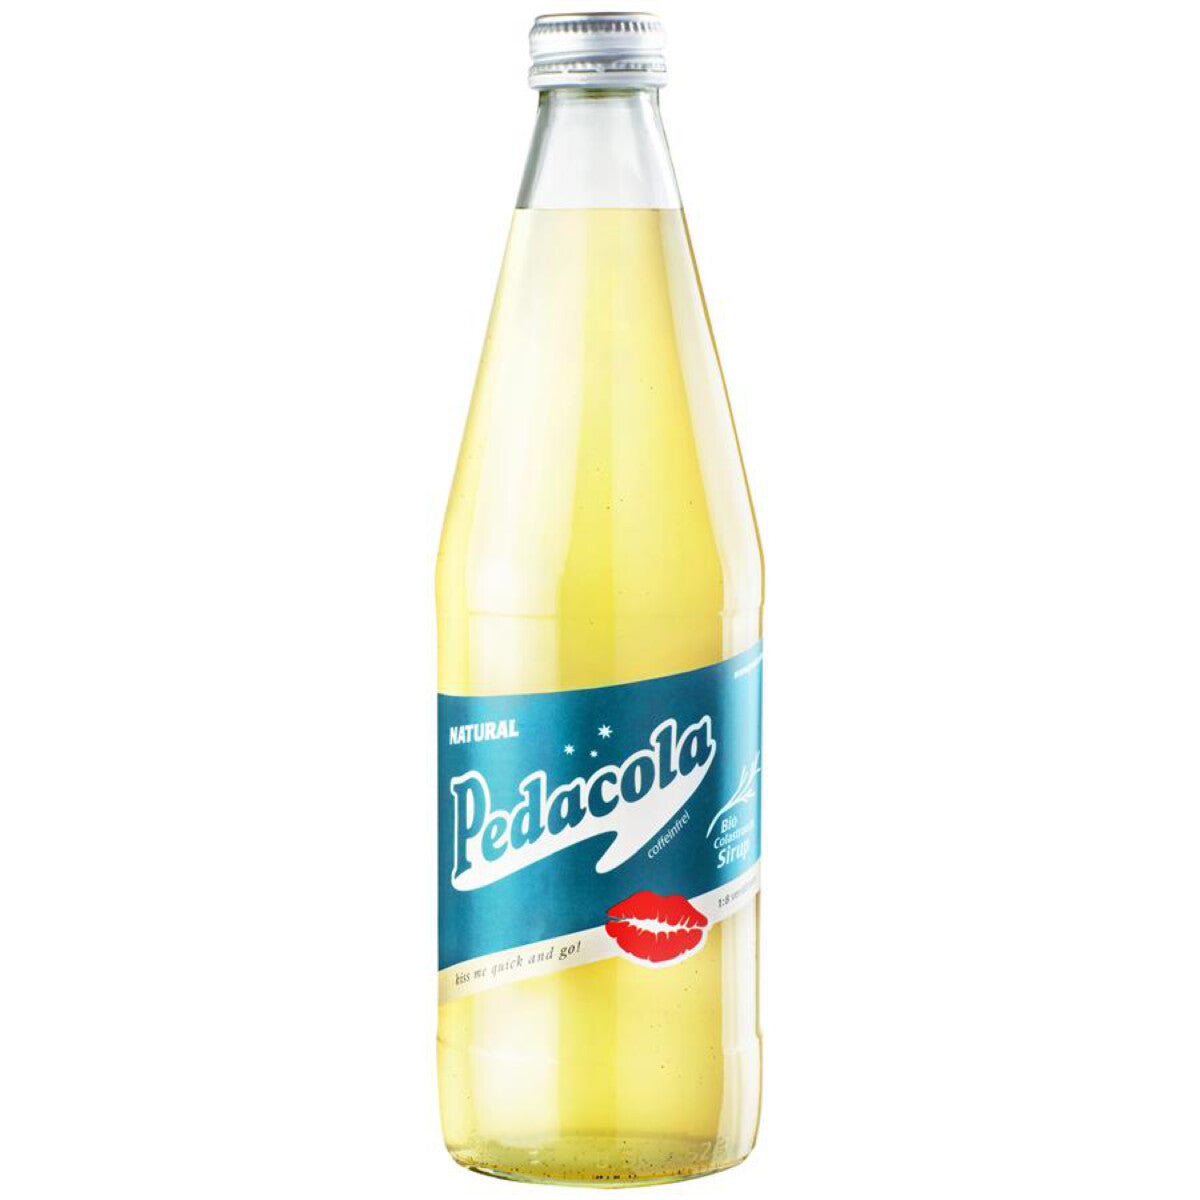 PEDACOLA Cola-Sirup - 0,5 l